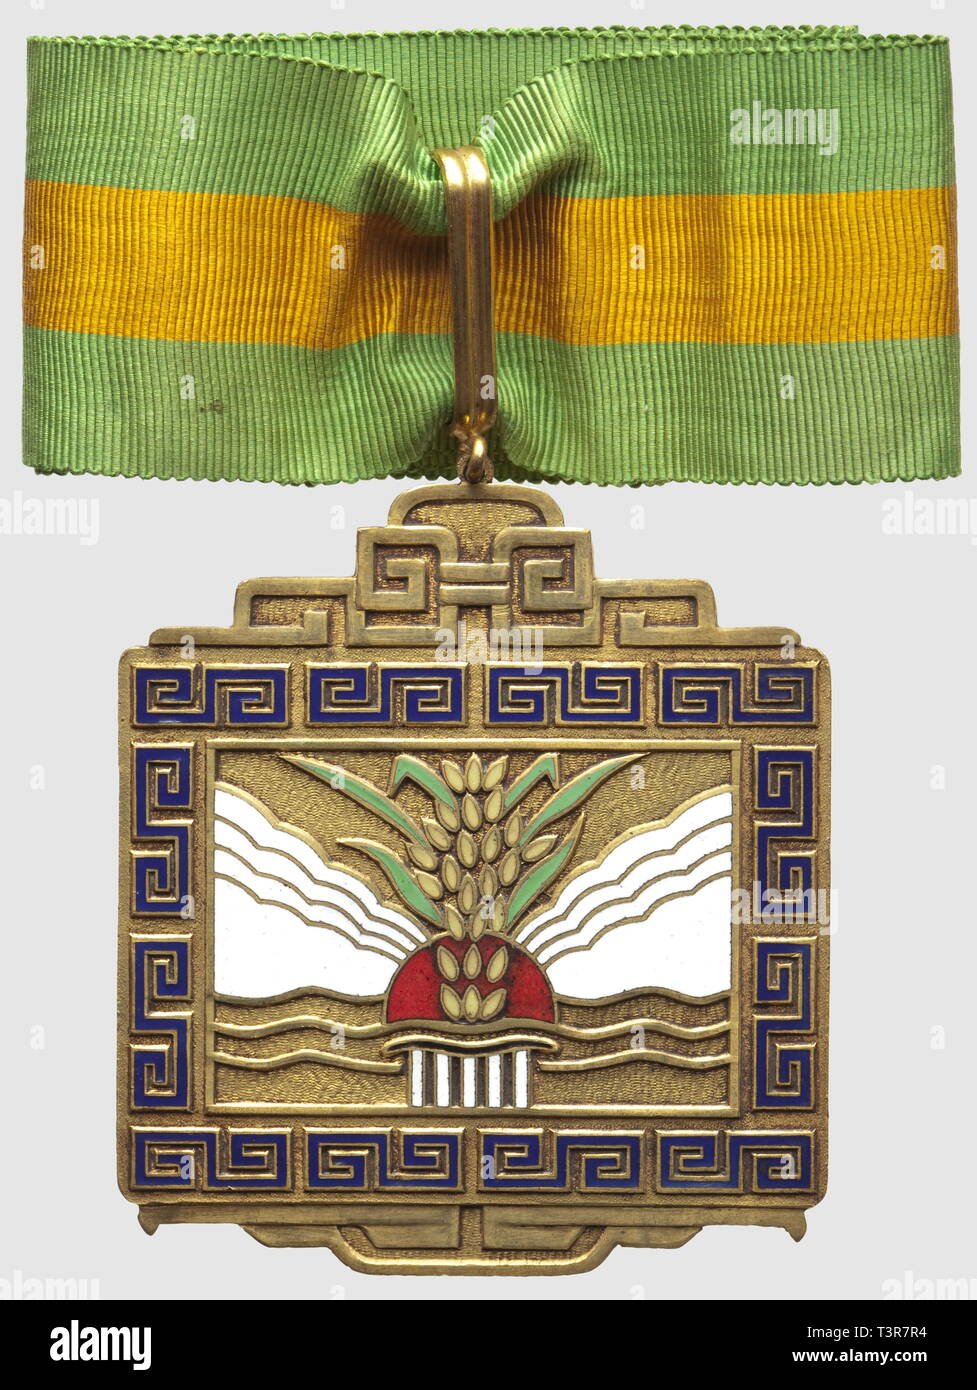 Ordre du Mérite Agricole, créé en 1936, commandeur, diamètre 61 x 71mm, en bronzo, Additional-Rights-Clearance-Info-Not-Available Foto Stock